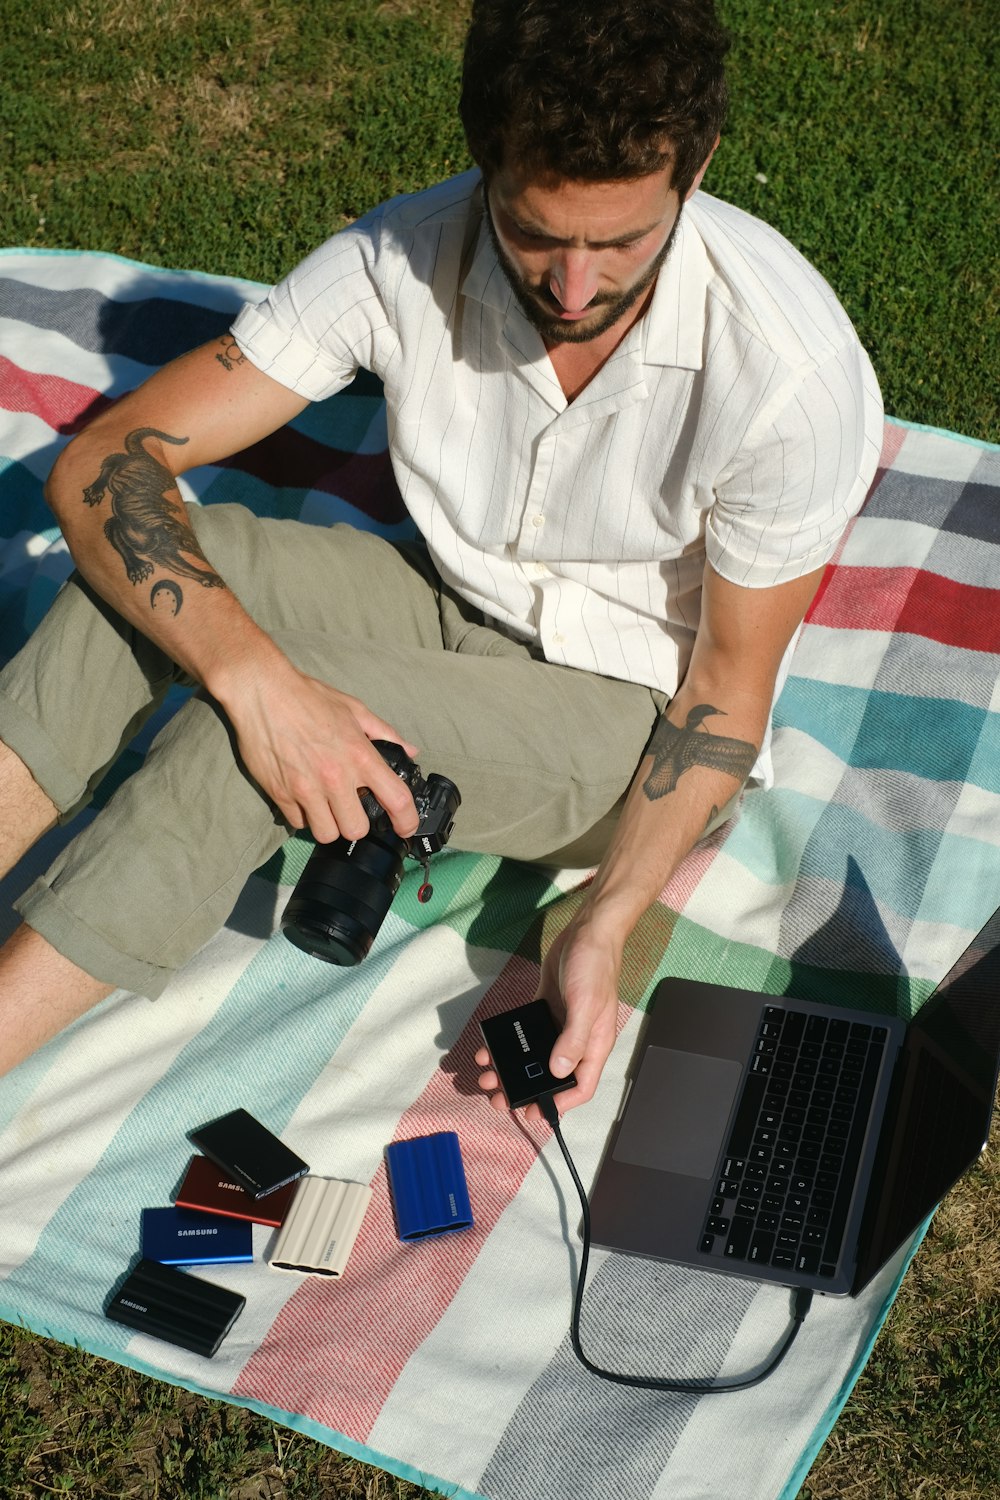 ノートパソコンとカメラを持って草の上に座っている男